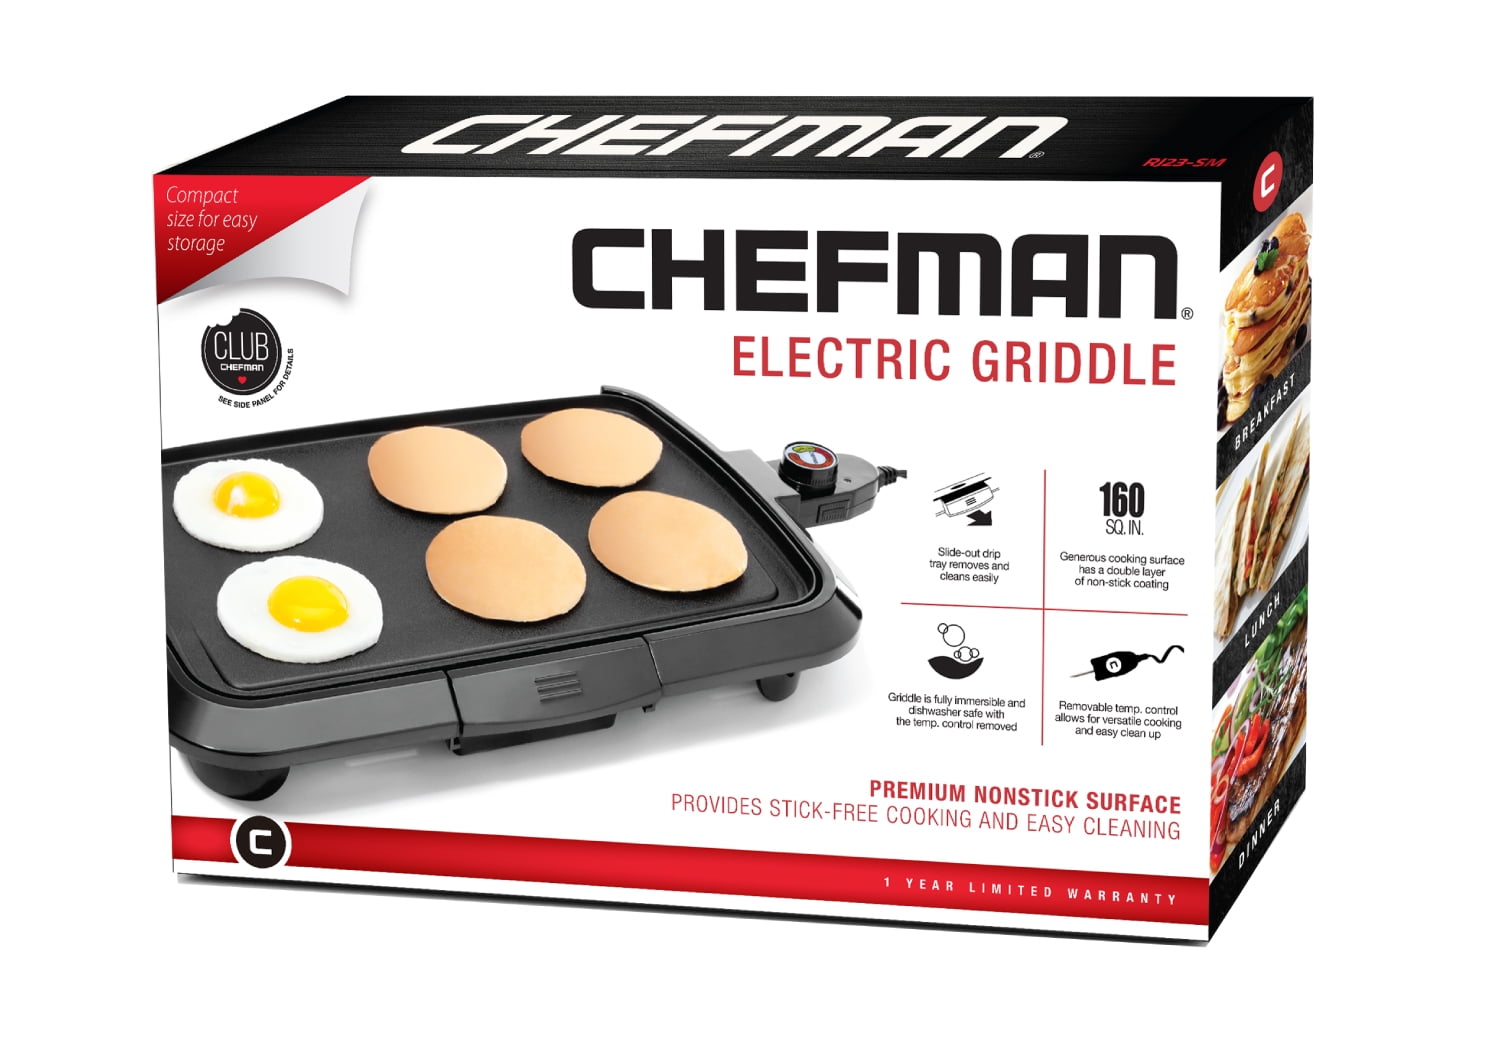 Chefman 16in Electric Griddle - Dishwasher Safe - 856773003553 - Damaged Box